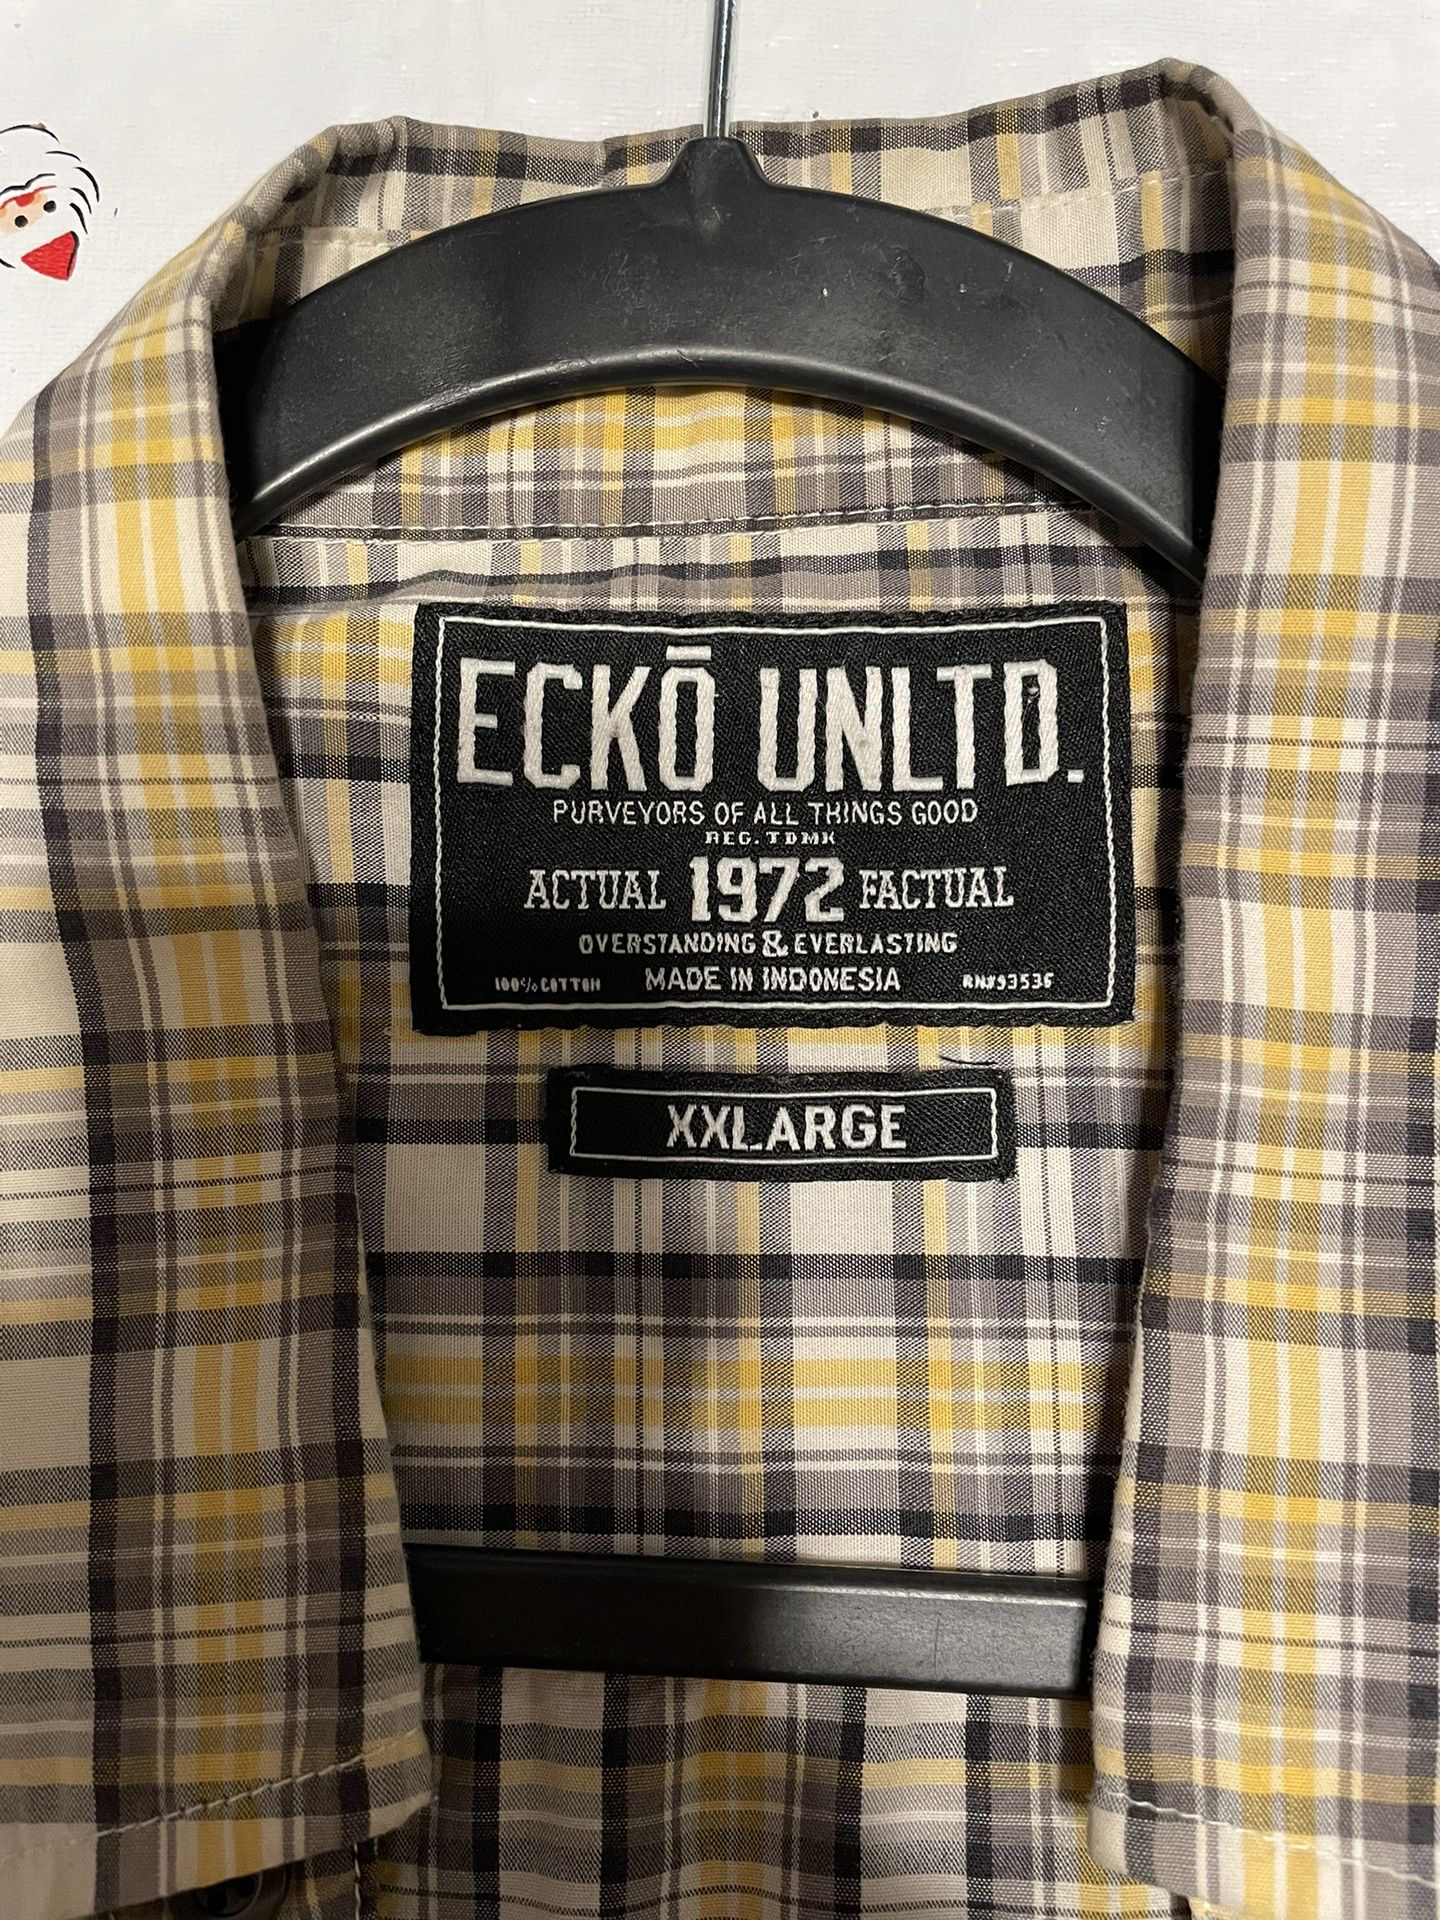 Ecko UNLTD Men’s Shirt